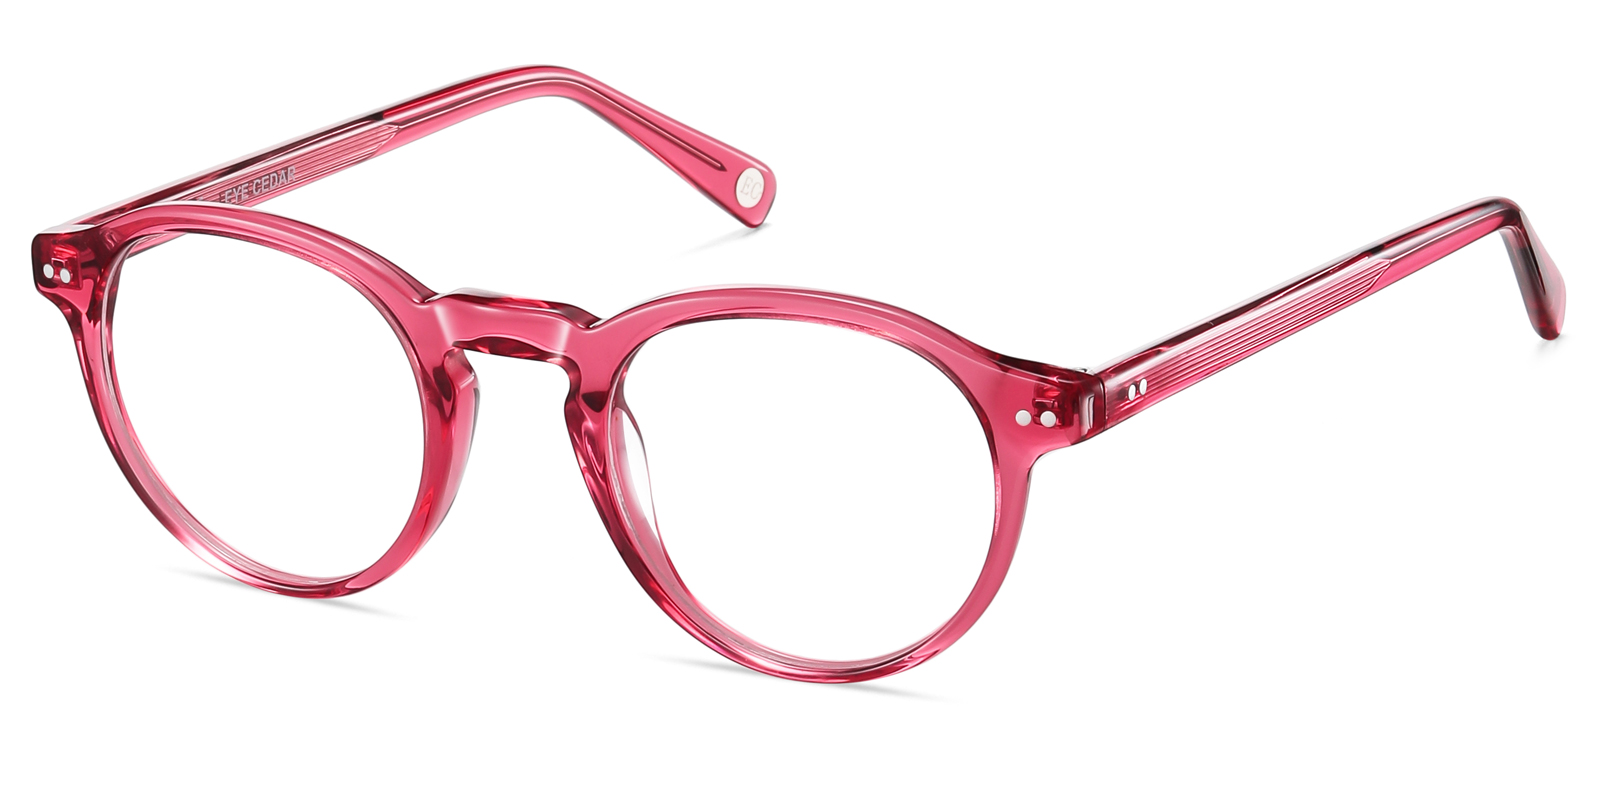 Bemia Reading Glasses for Women Round Red Eyeglasses Readers